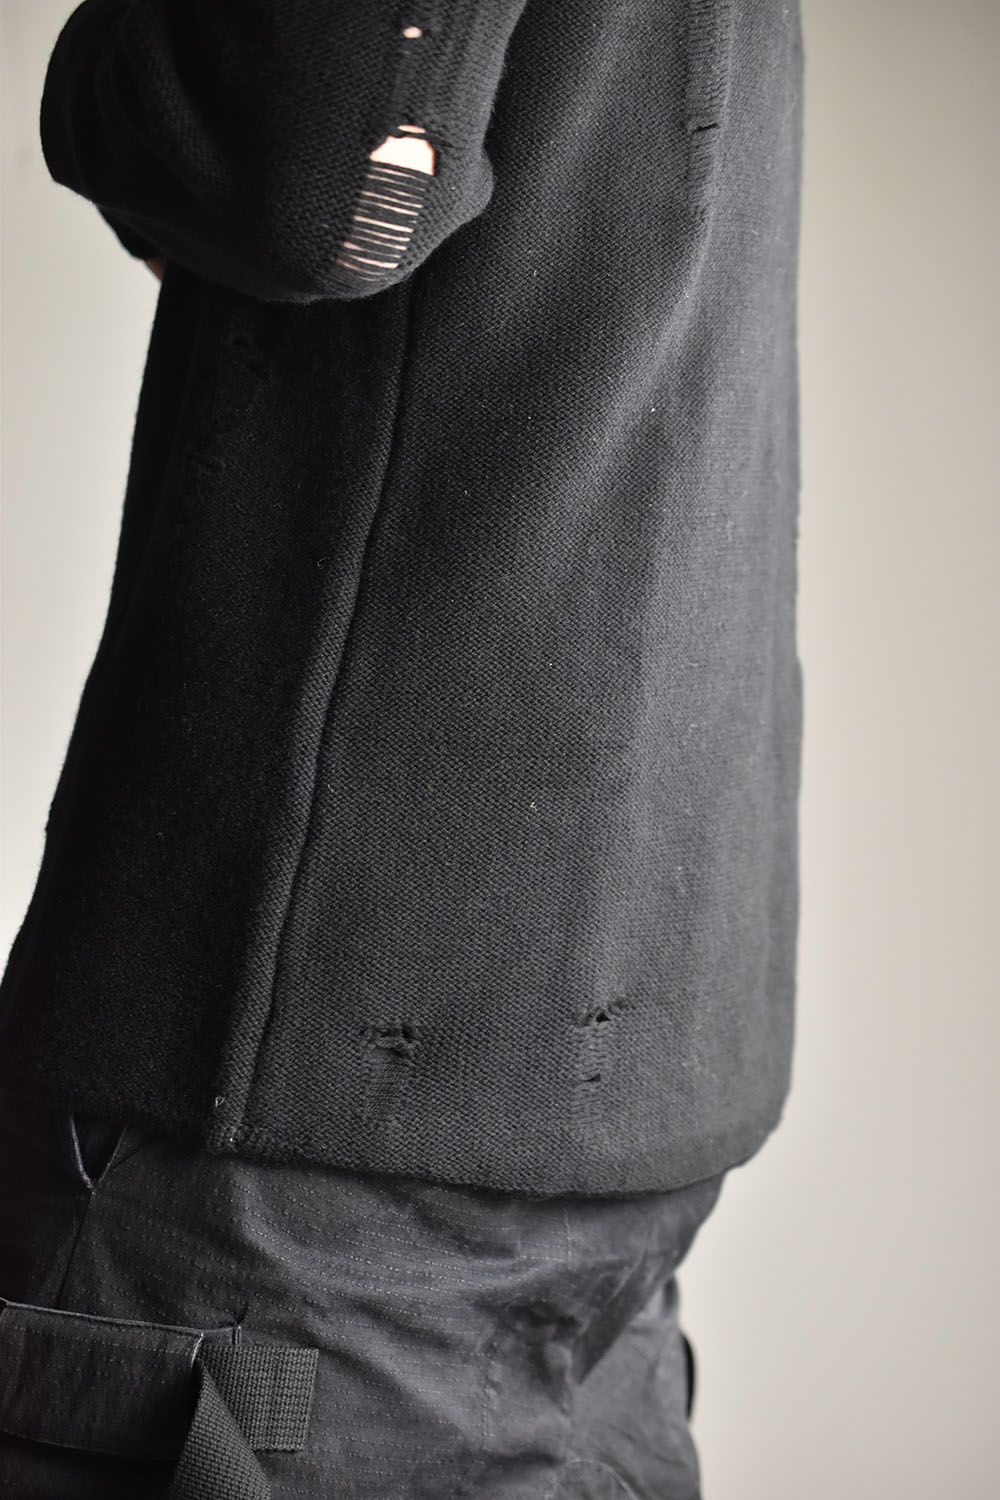 Damage Knit Pullover"Black"/ダメージニットプルオーバー"ブラック"